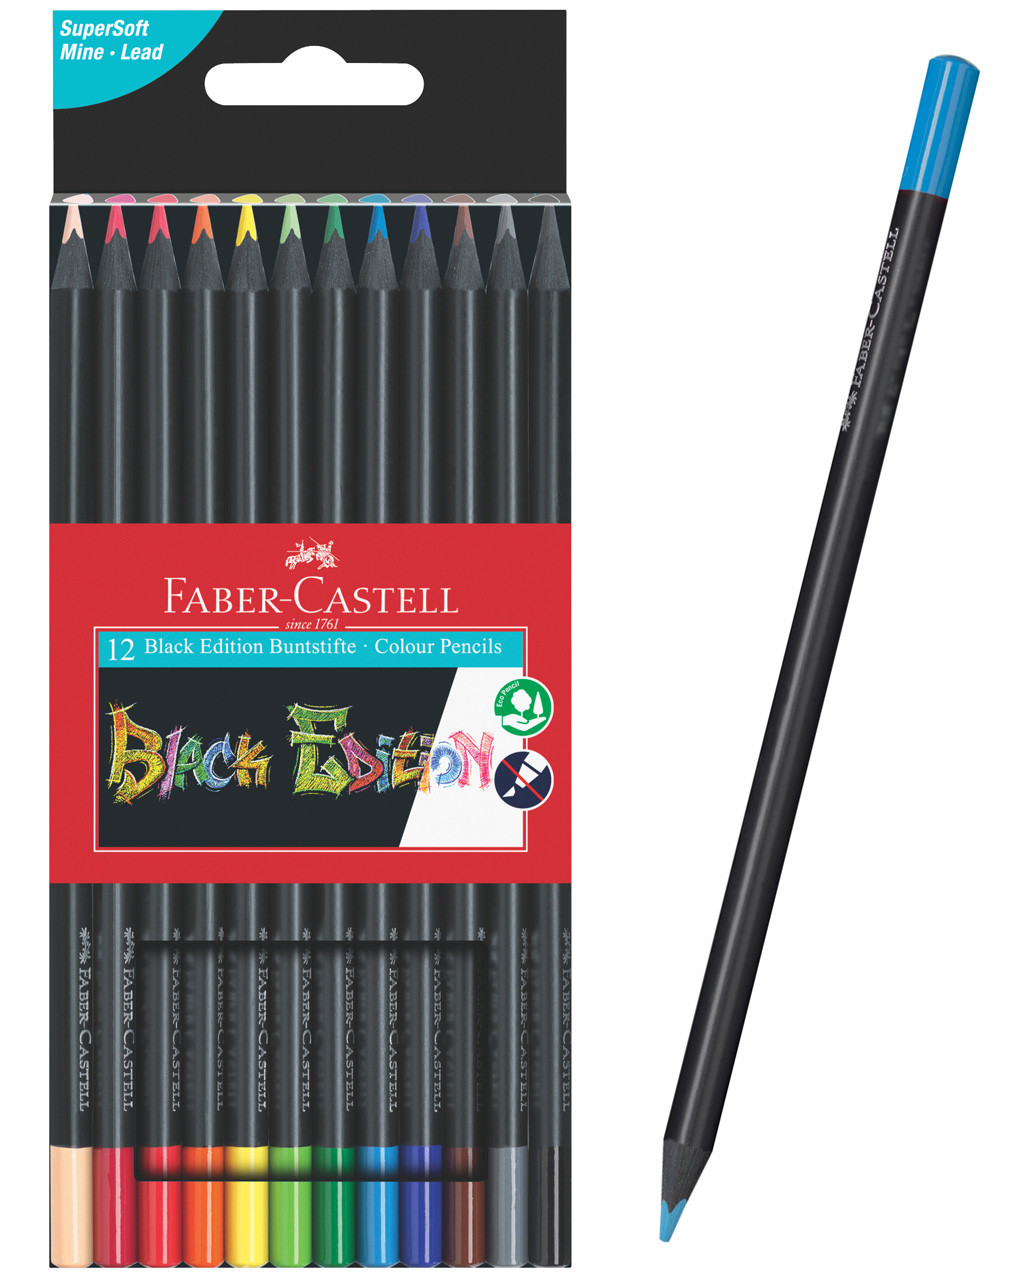 Faber-Castell-Buntstifte-Black-Edition-12er-Farbstifte-505887-online-kaufen-lafueliki